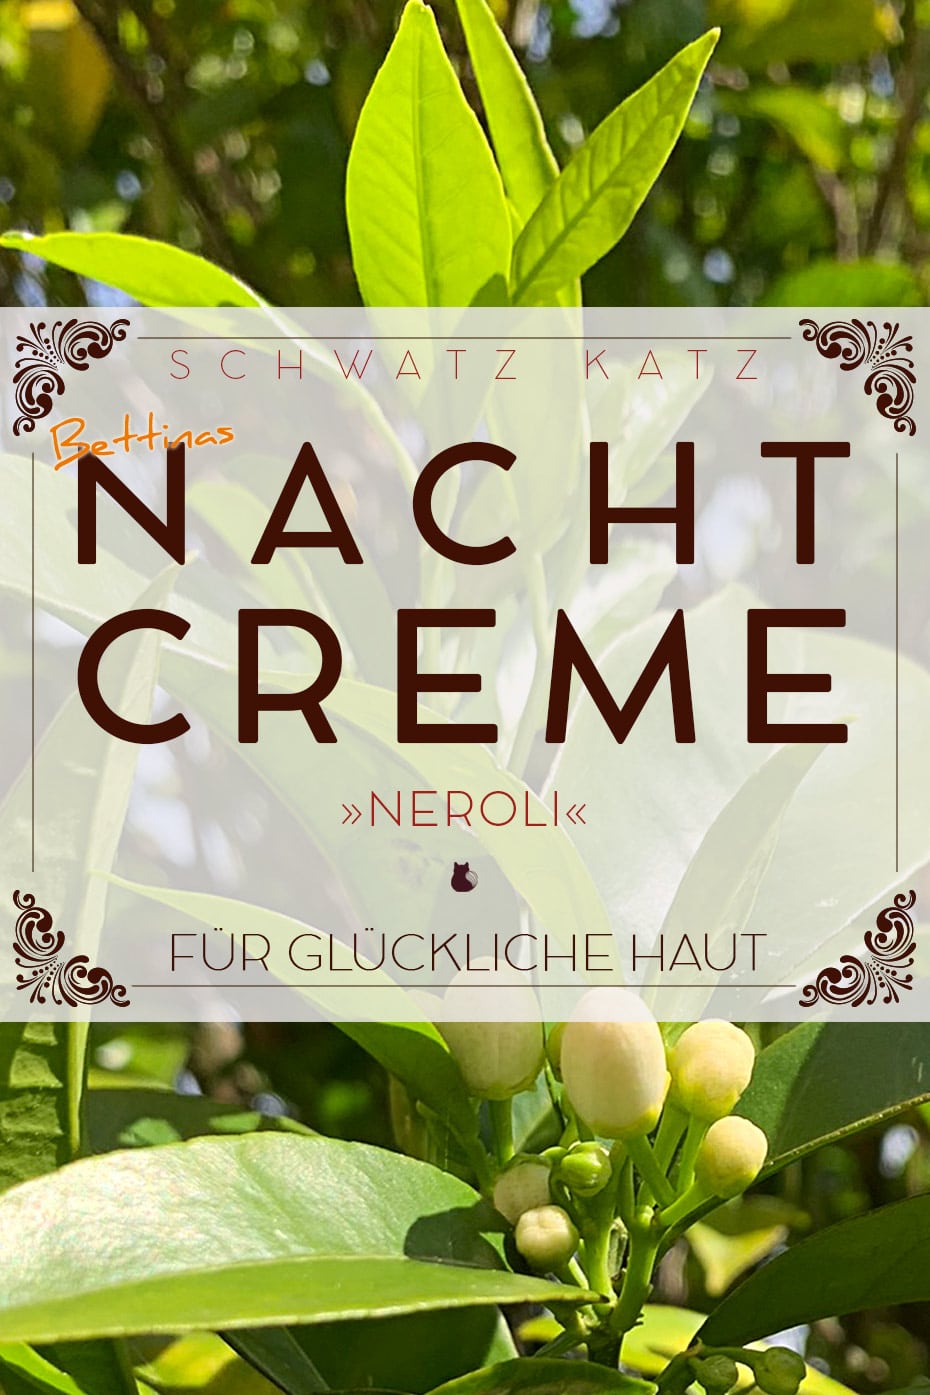 Nachtcreme »Neroli« für Frühlingsstimmung und glückliche Haut | Schwatz Katz